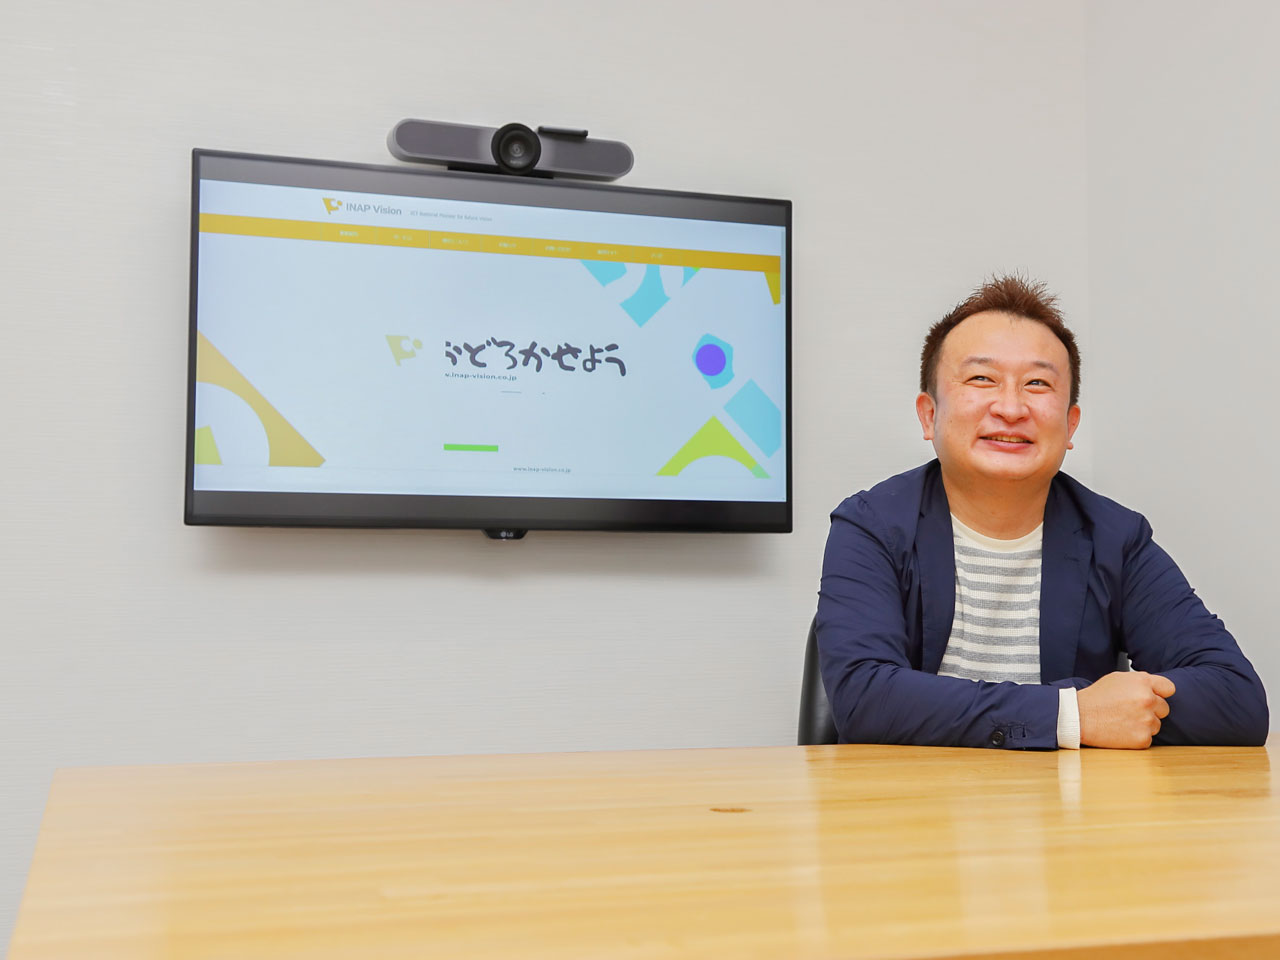 代表取締役CEOの川島 祐一朗氏
単身米シリコンバレーに渡り、帰国後に同社を起業